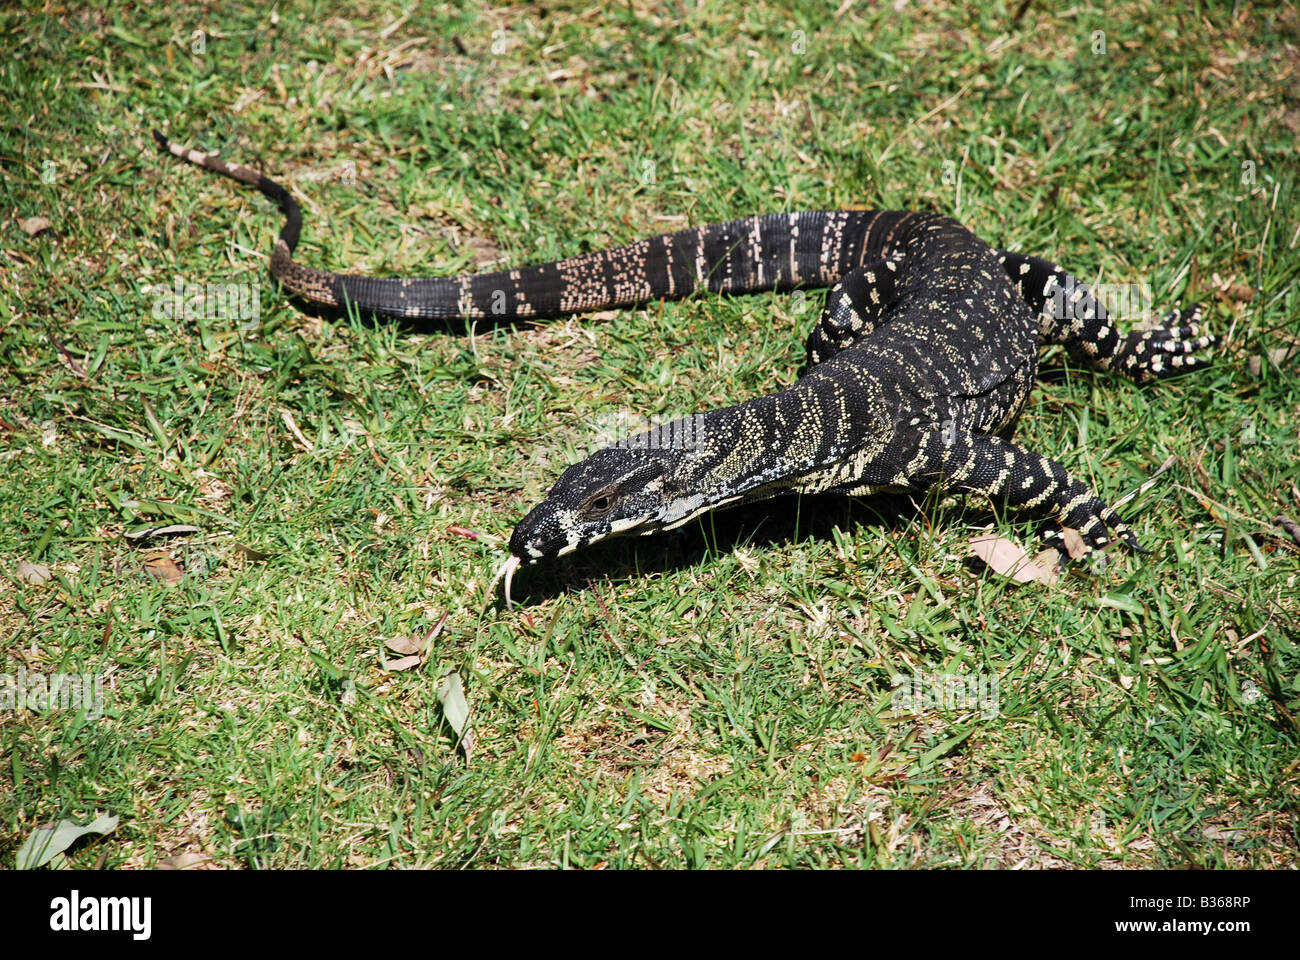 GOANNA Australian monitor lizard SAT ON GRASS Stock Photo